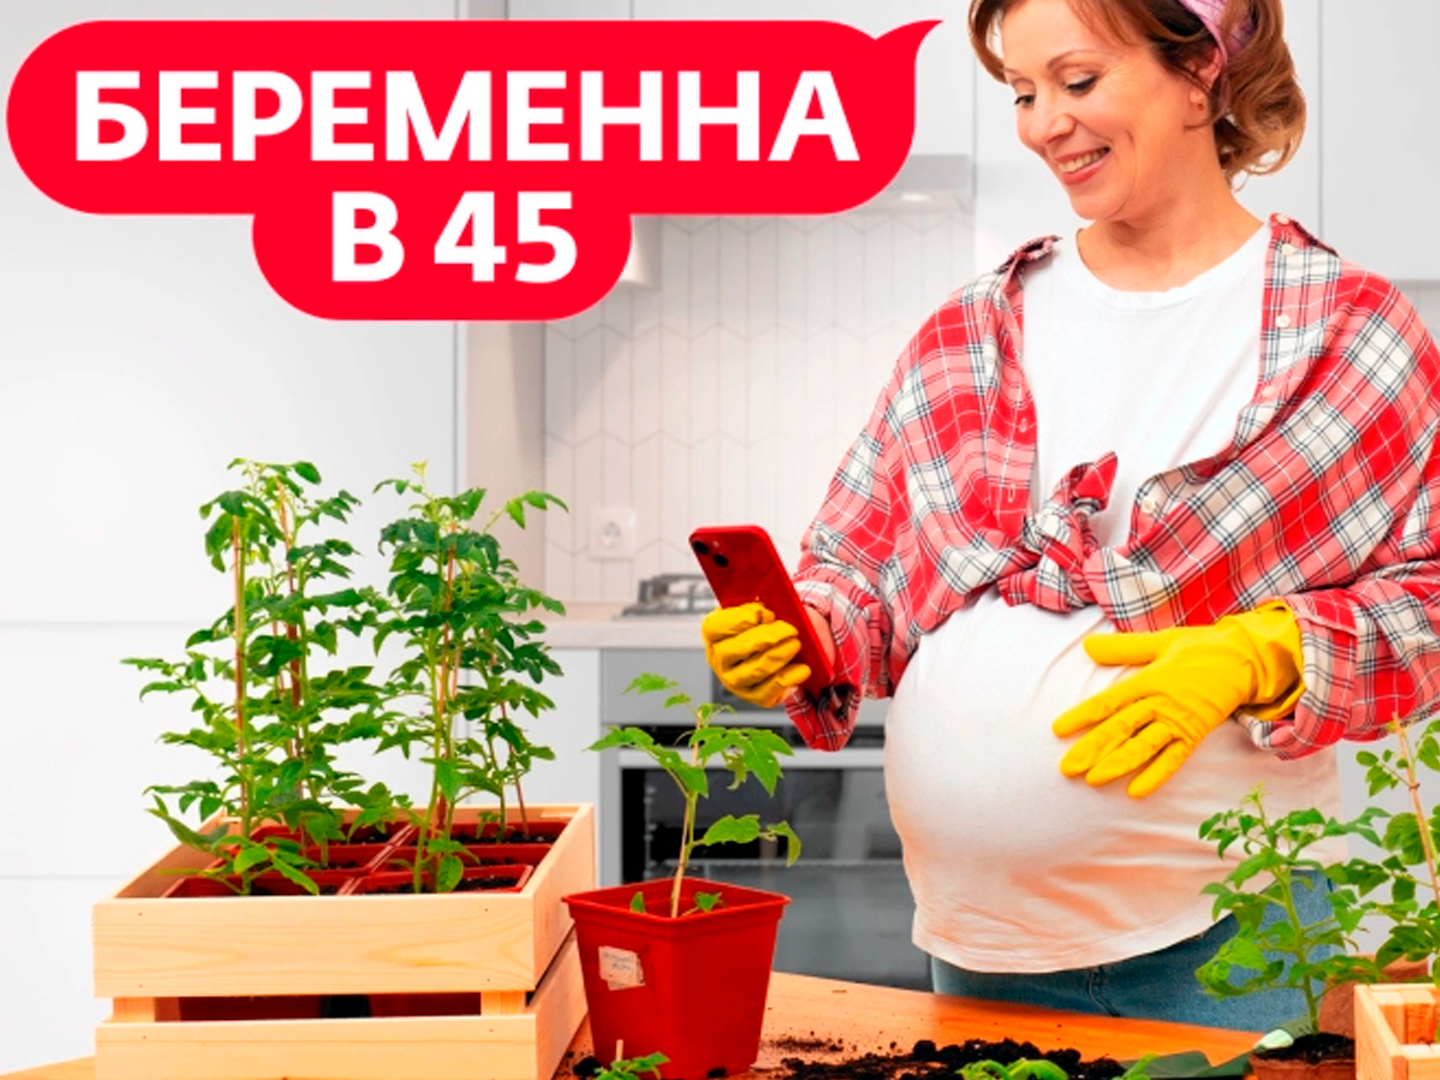 Беременна в 45 (Екатерина, Москва)